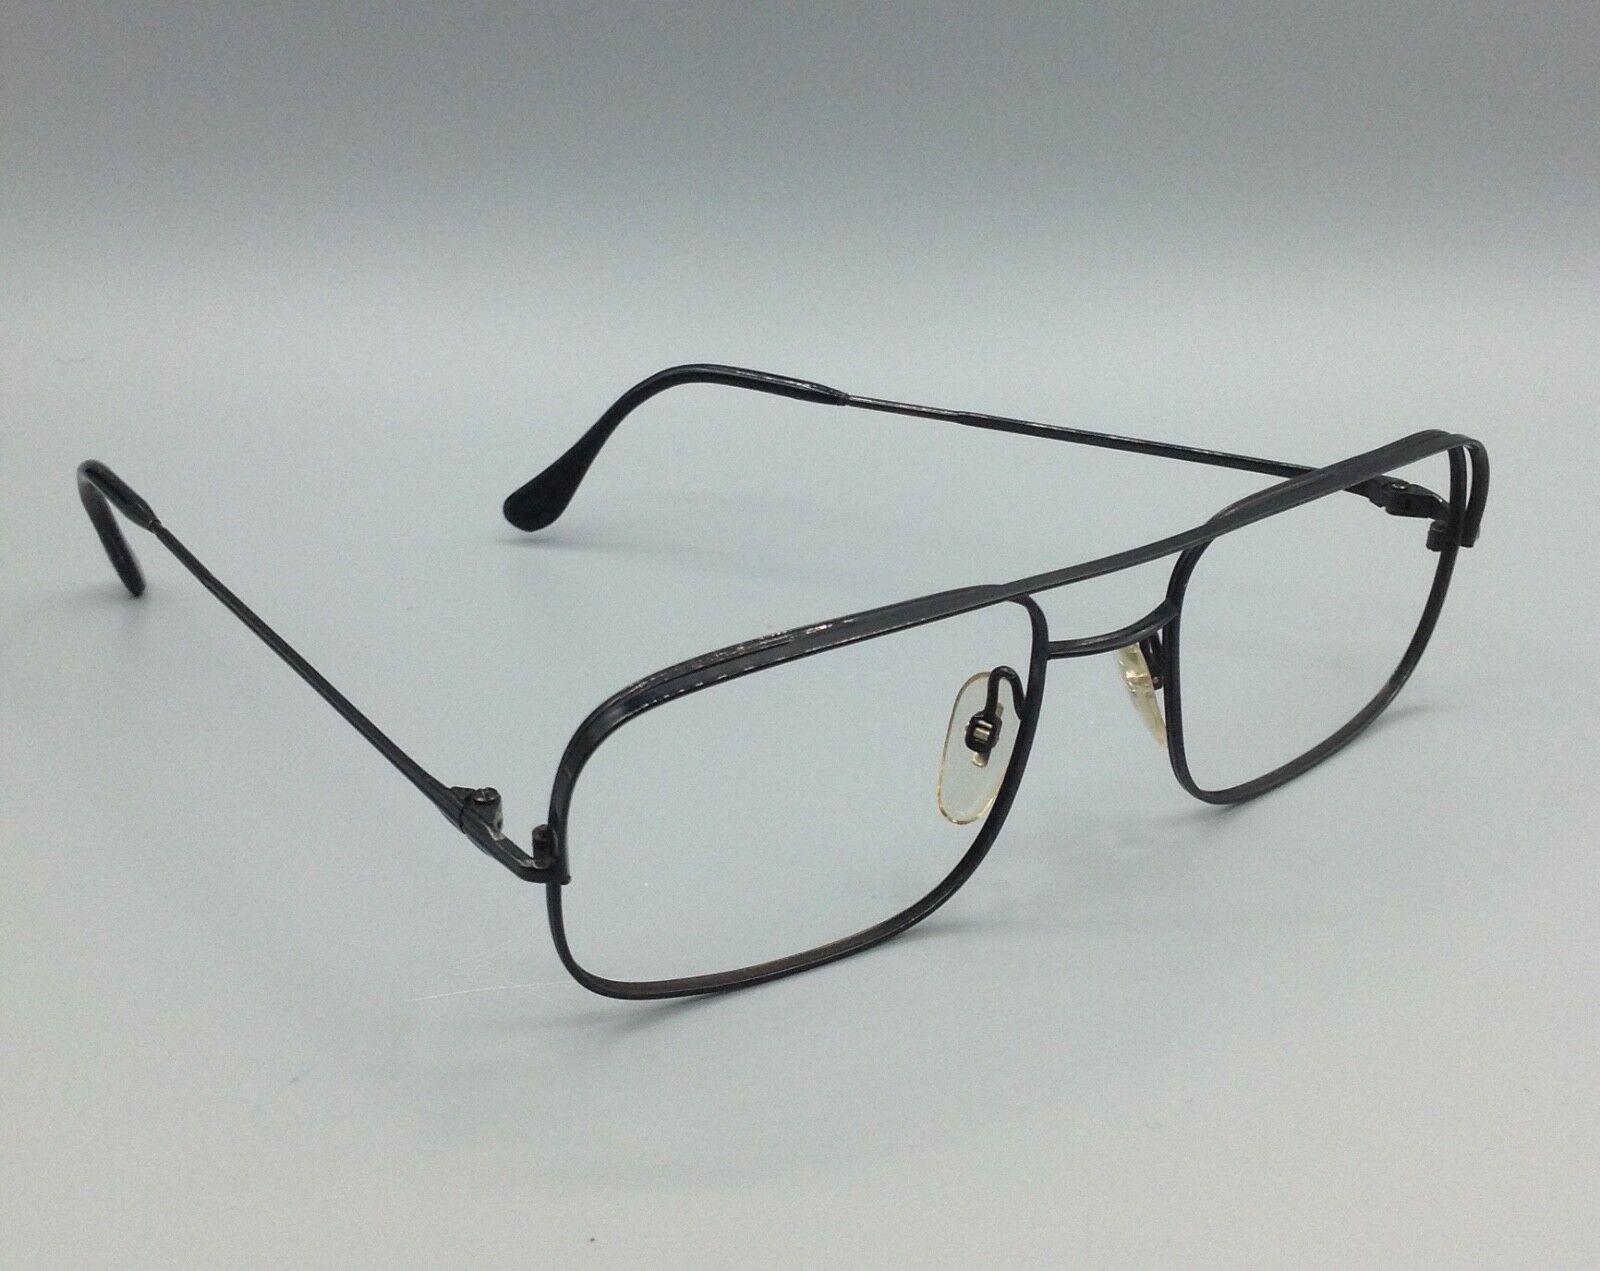 Metalflex montatura occhiale vintage frame 52-22 eyewear lunettes brillen gafas